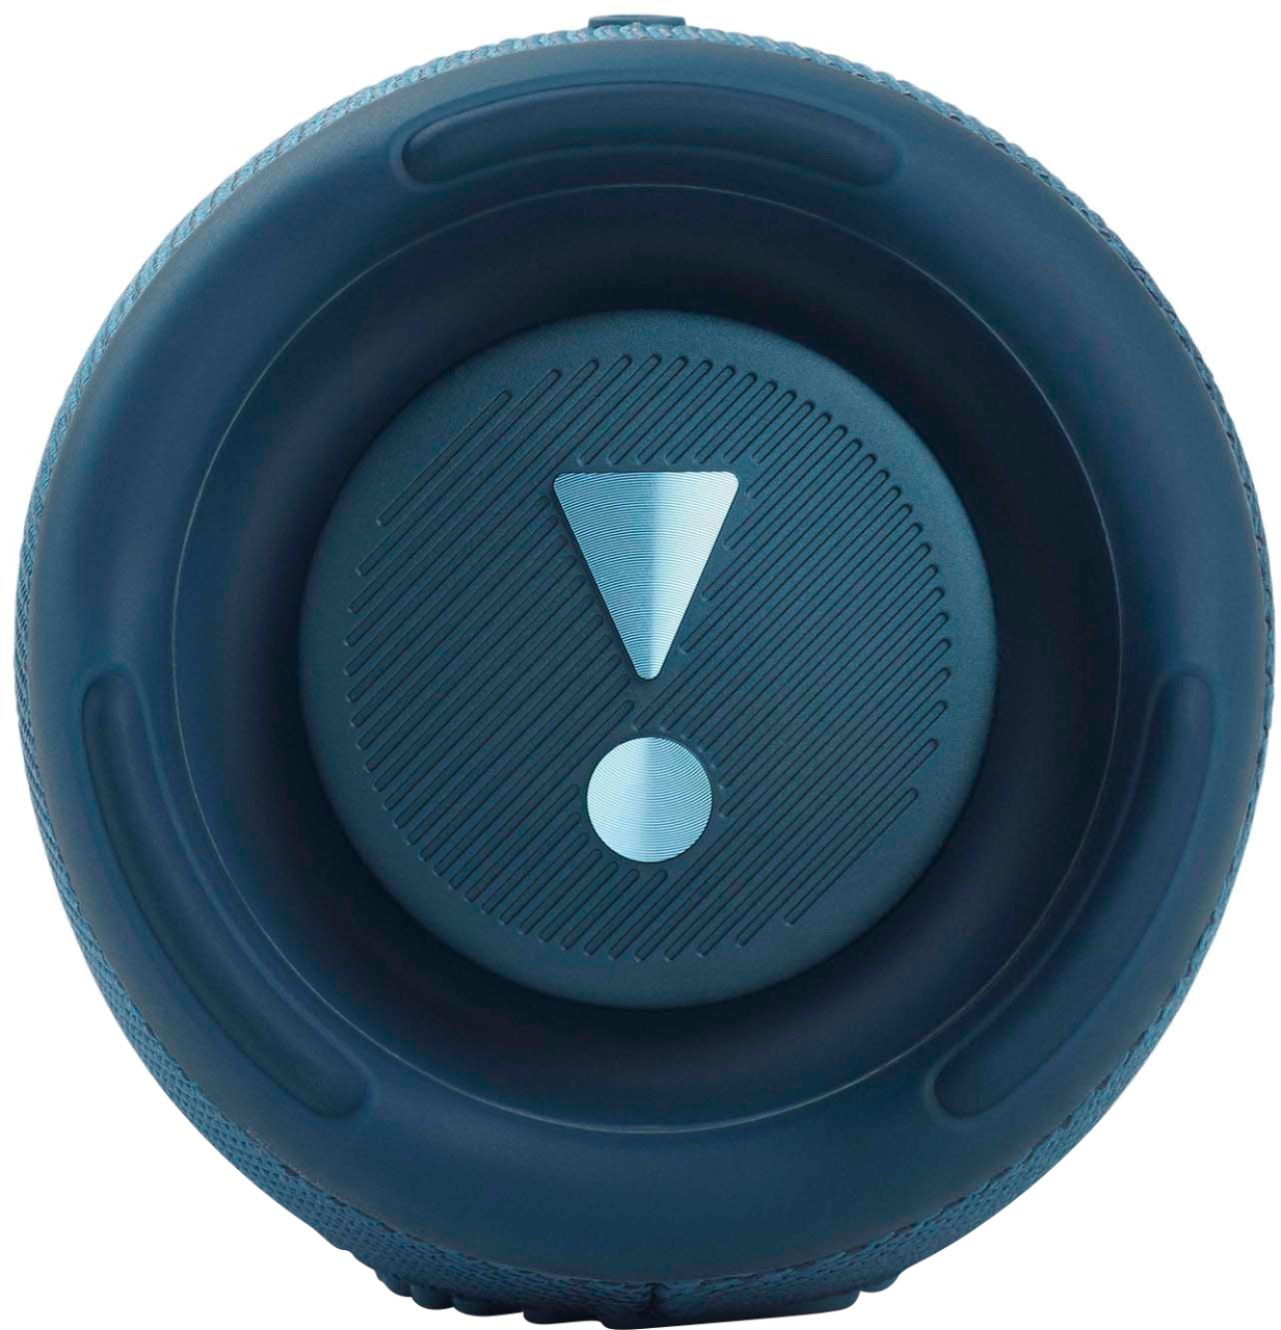 JBL JBLCHARGE5BLUAM Charge 5 Portable Bluetooth Waterproof Speaker, Blue